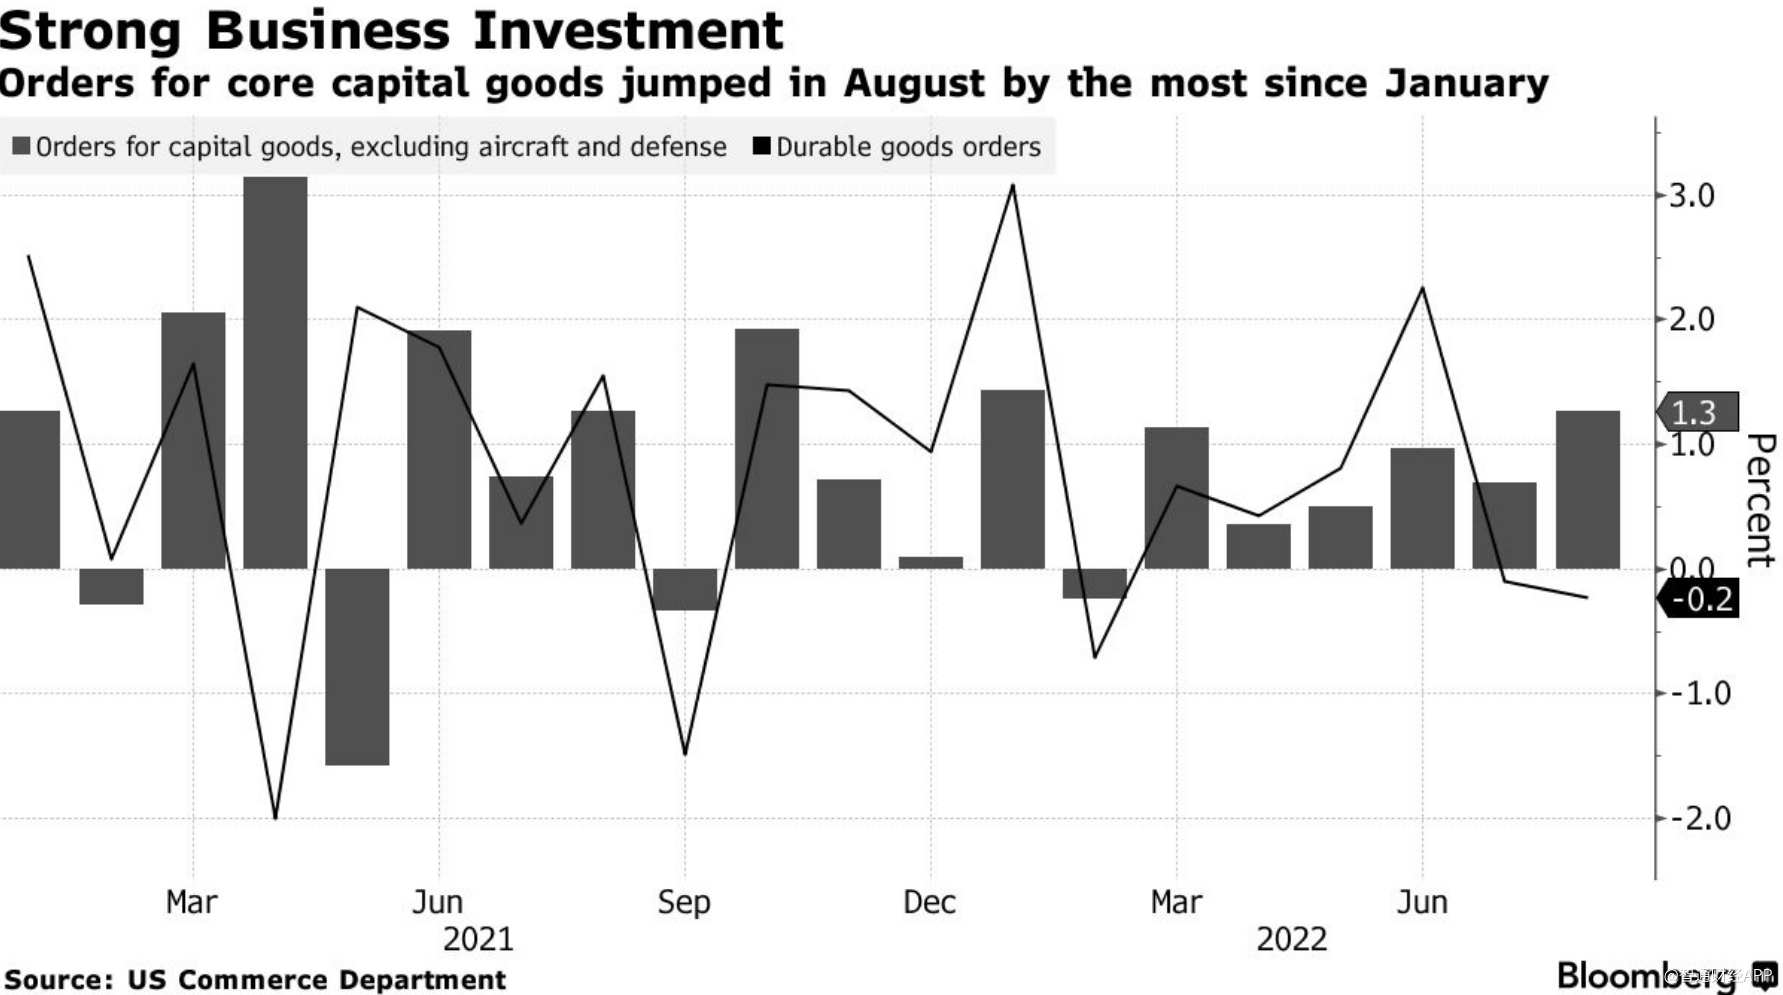 美国8月核心资本品订单意外增长1.3% 企业投资仍坚挺